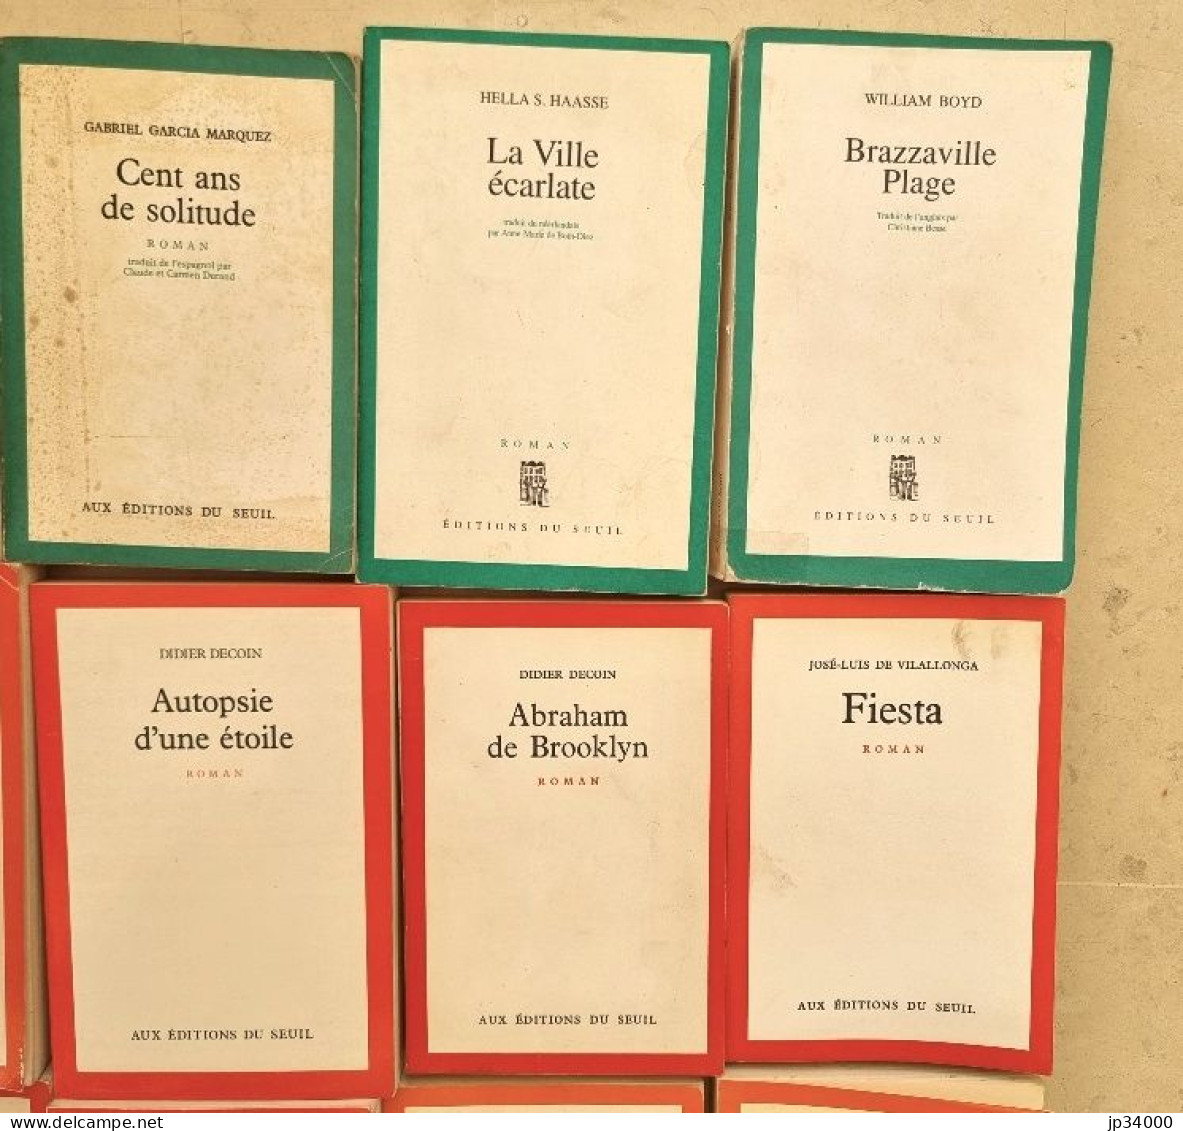 Lot 25 livres Editions SEUIL (Garcia marquez, ben jelloul, decoin, green, etc..